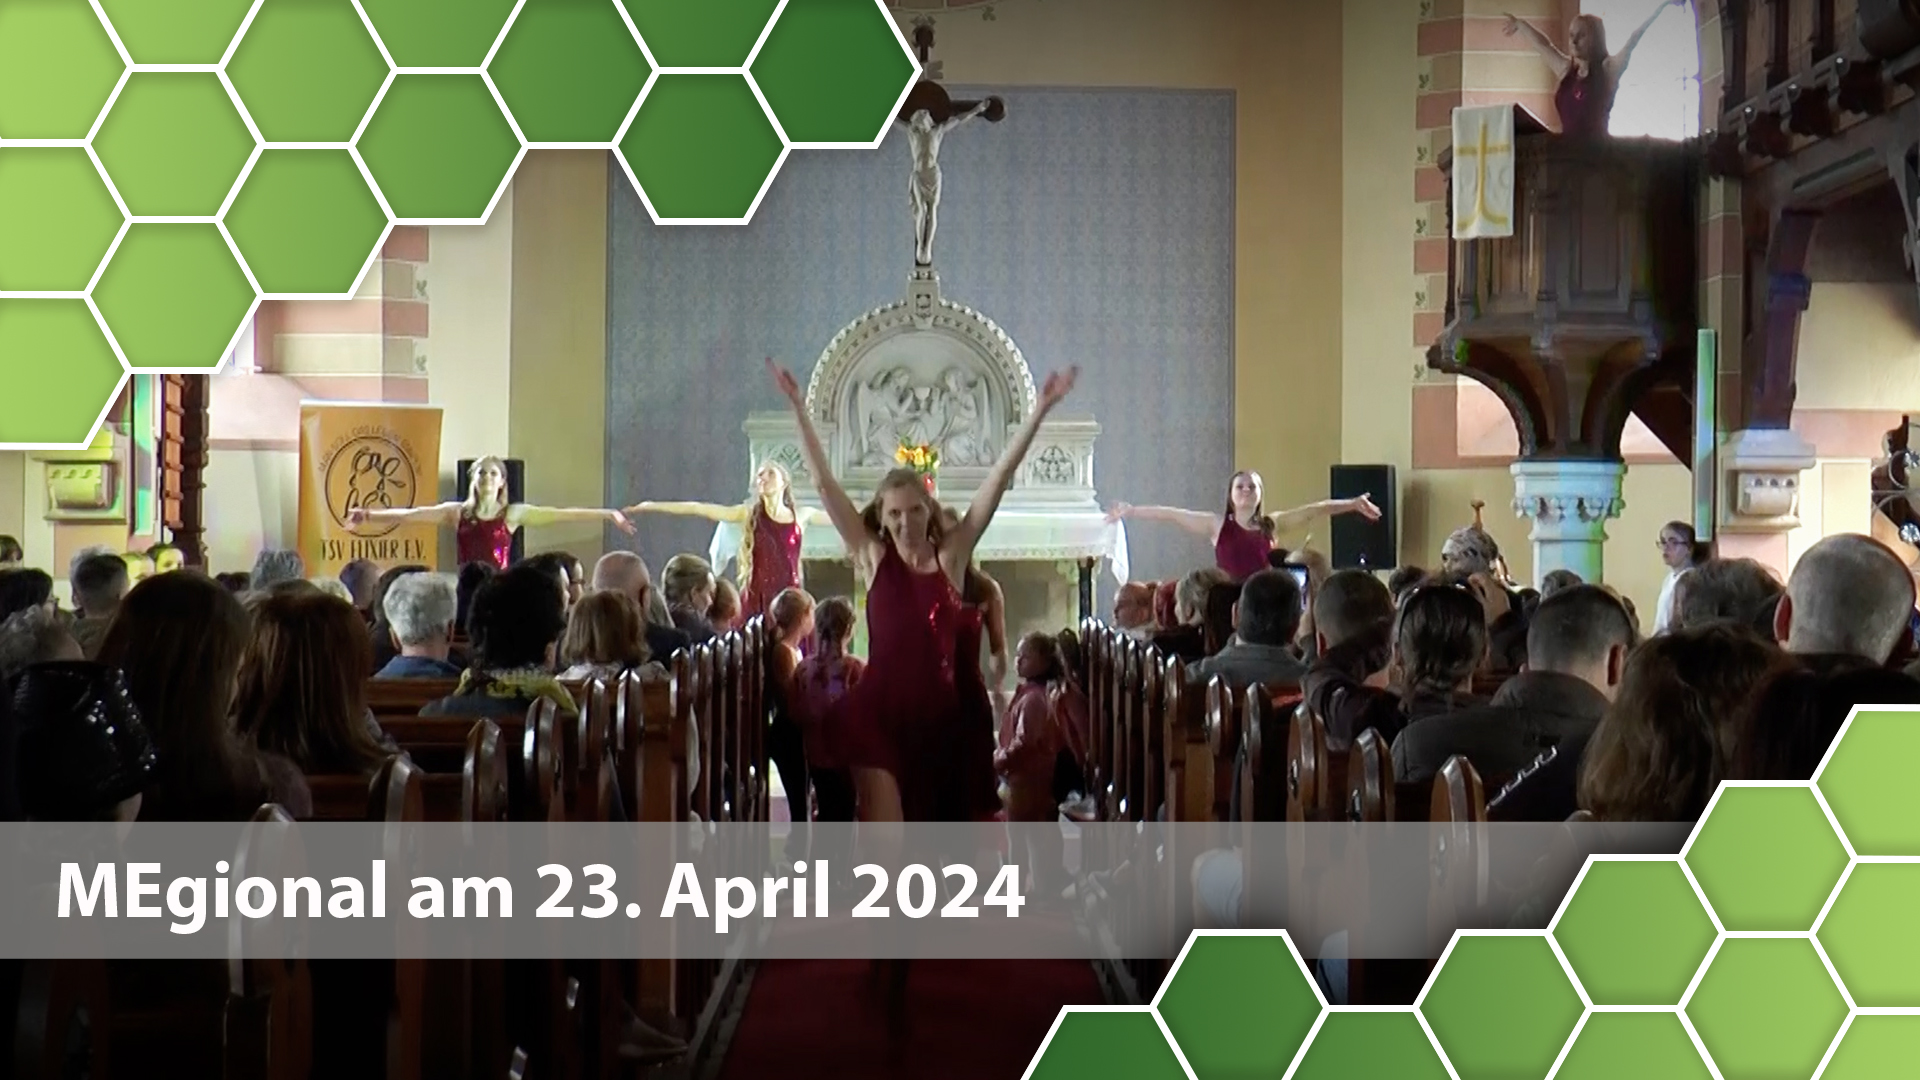 MEgional am 23. April 2024 mit der Benefizveranstaltung für Kirchturm Berthelsdorf